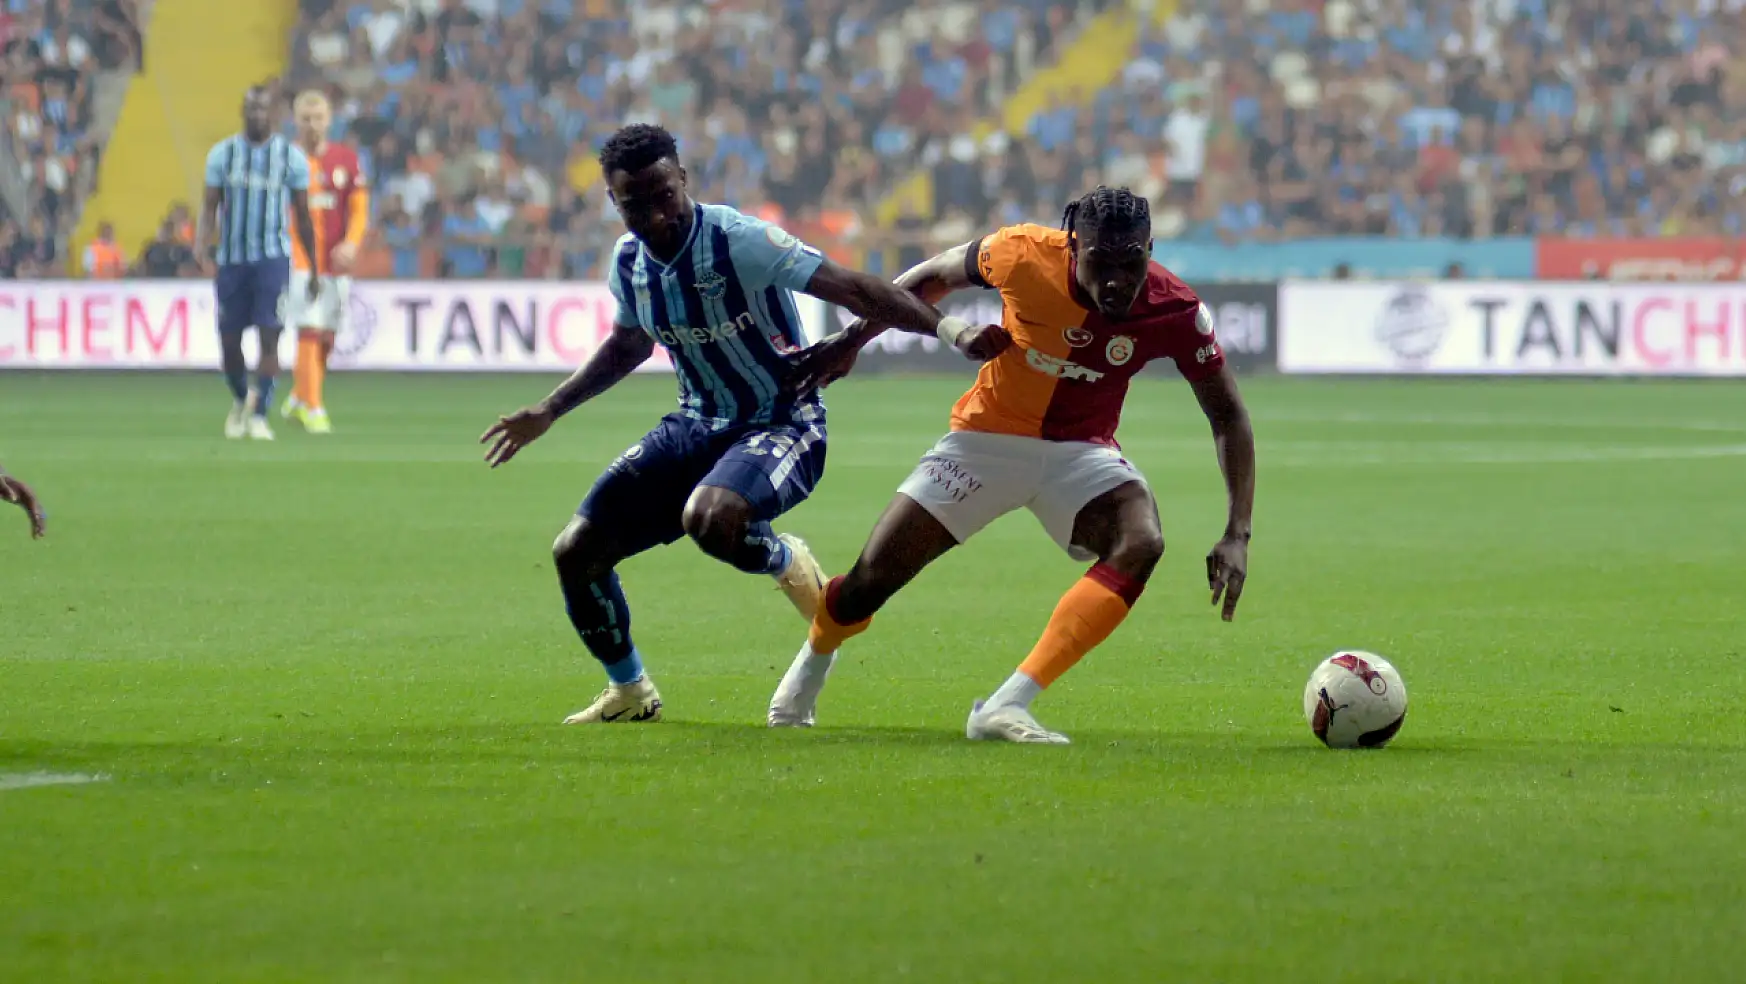 Nefes Kesen Adana Demirspor - Galatasaray Maçı İlk Yarısı 0-0 Sona Erdi